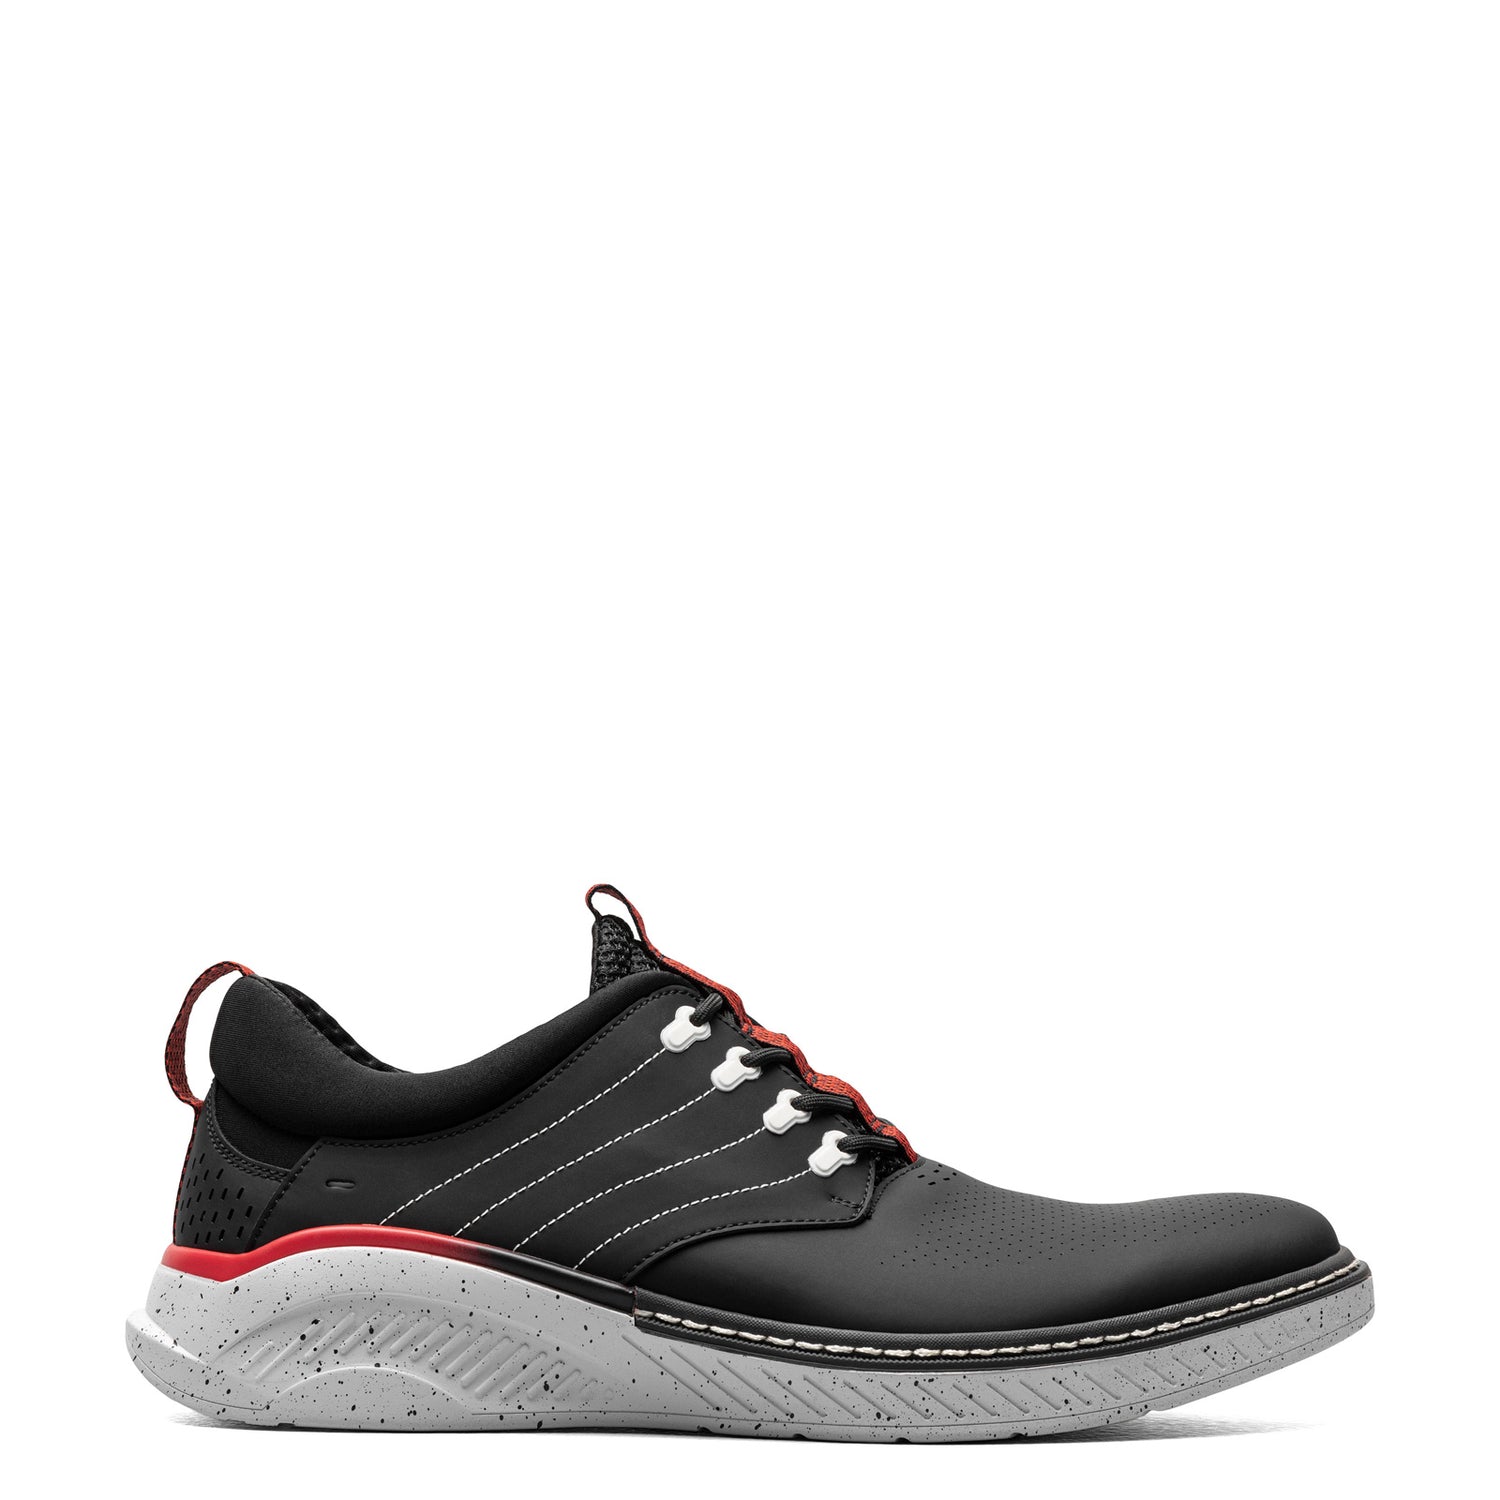 Peltz Shoes  Men's Stacy Adams Barna Sneaker Black 25594-001